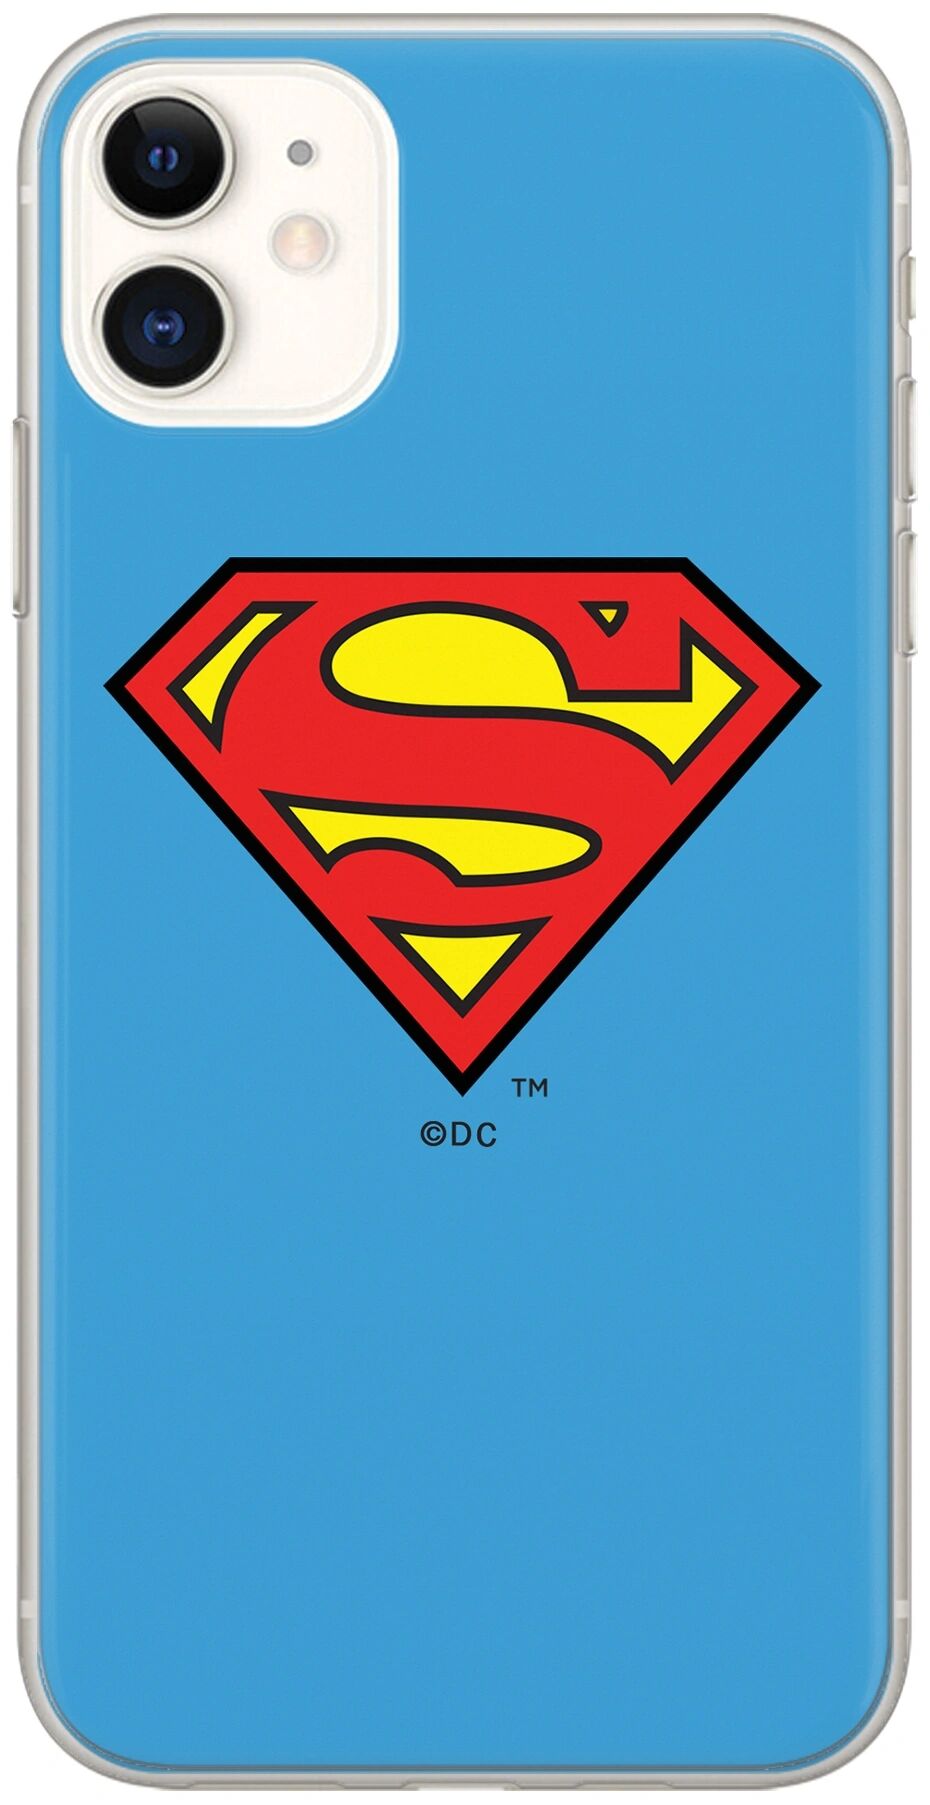 Ert Ochranný kryt pro iPhone XS / X - DC, Superman 002 Blue